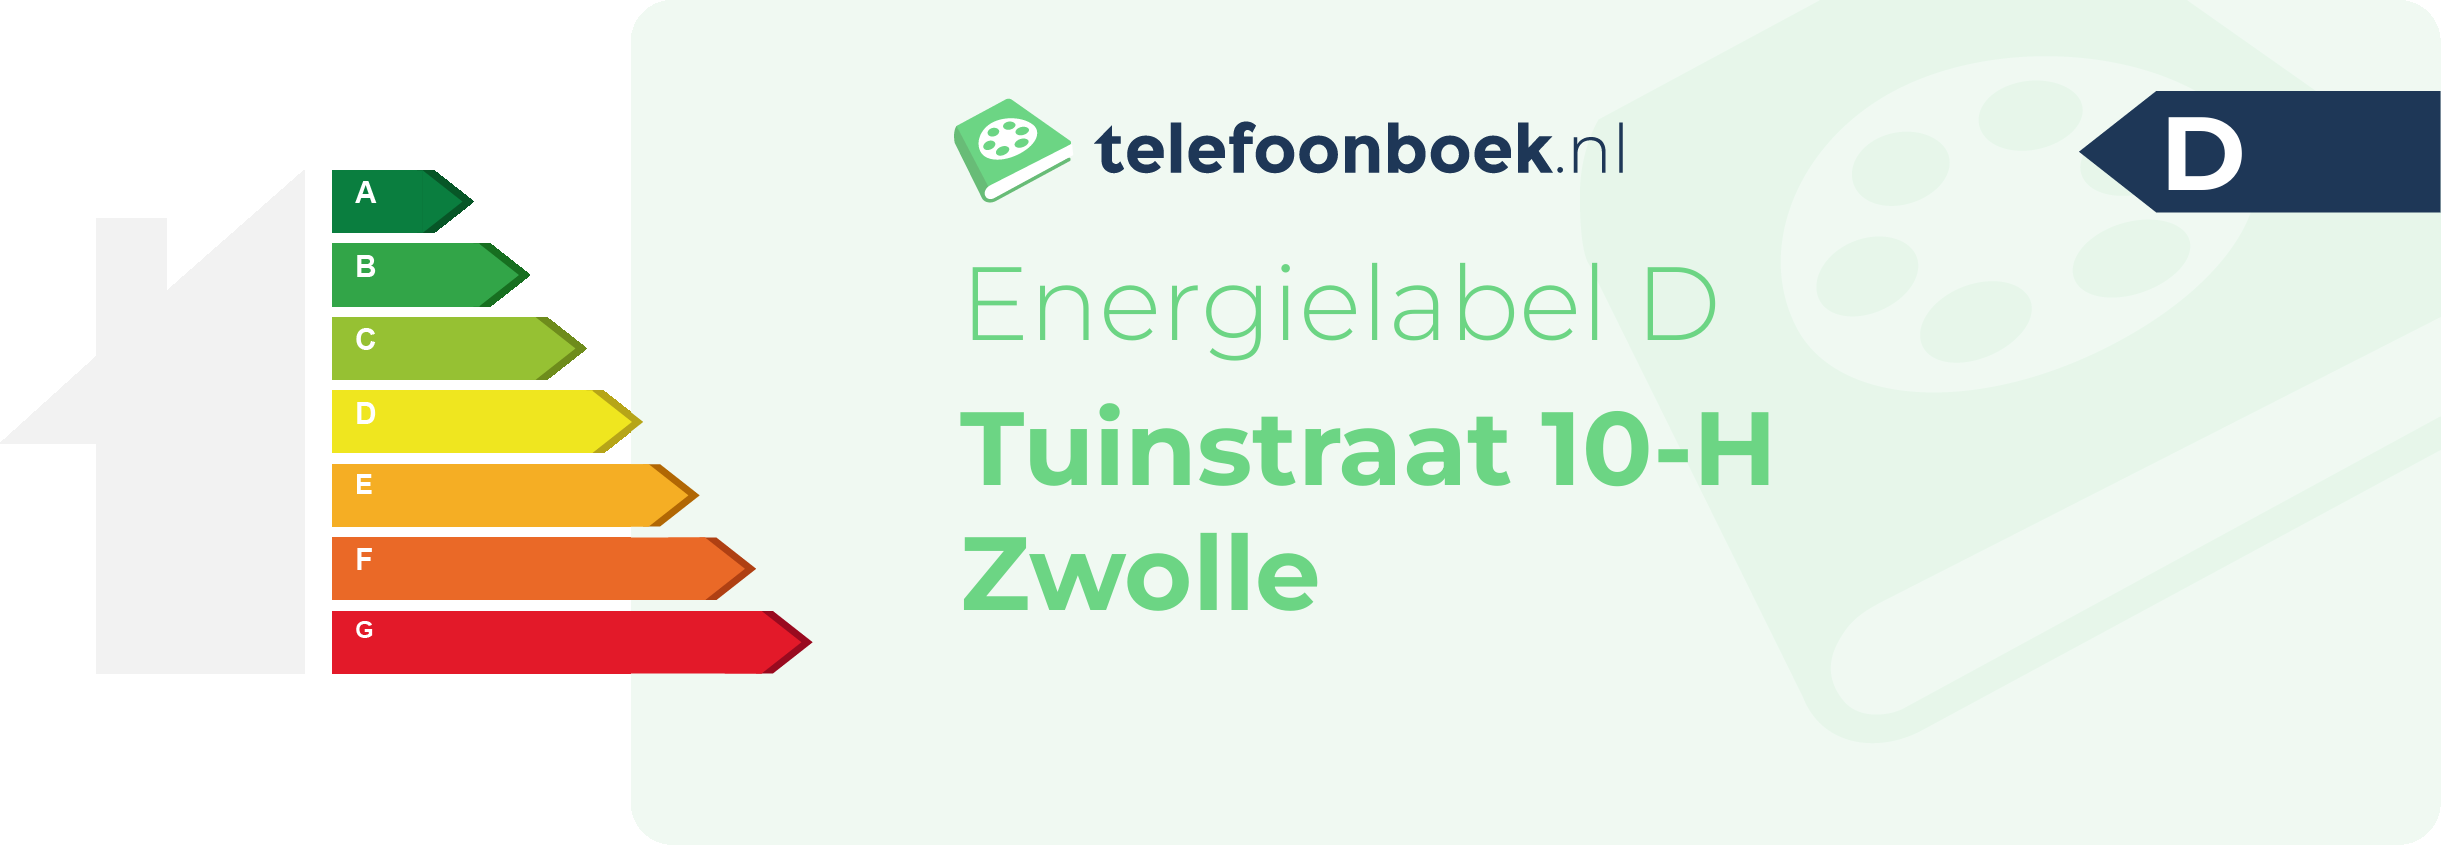 Energielabel Tuinstraat 10-H Zwolle